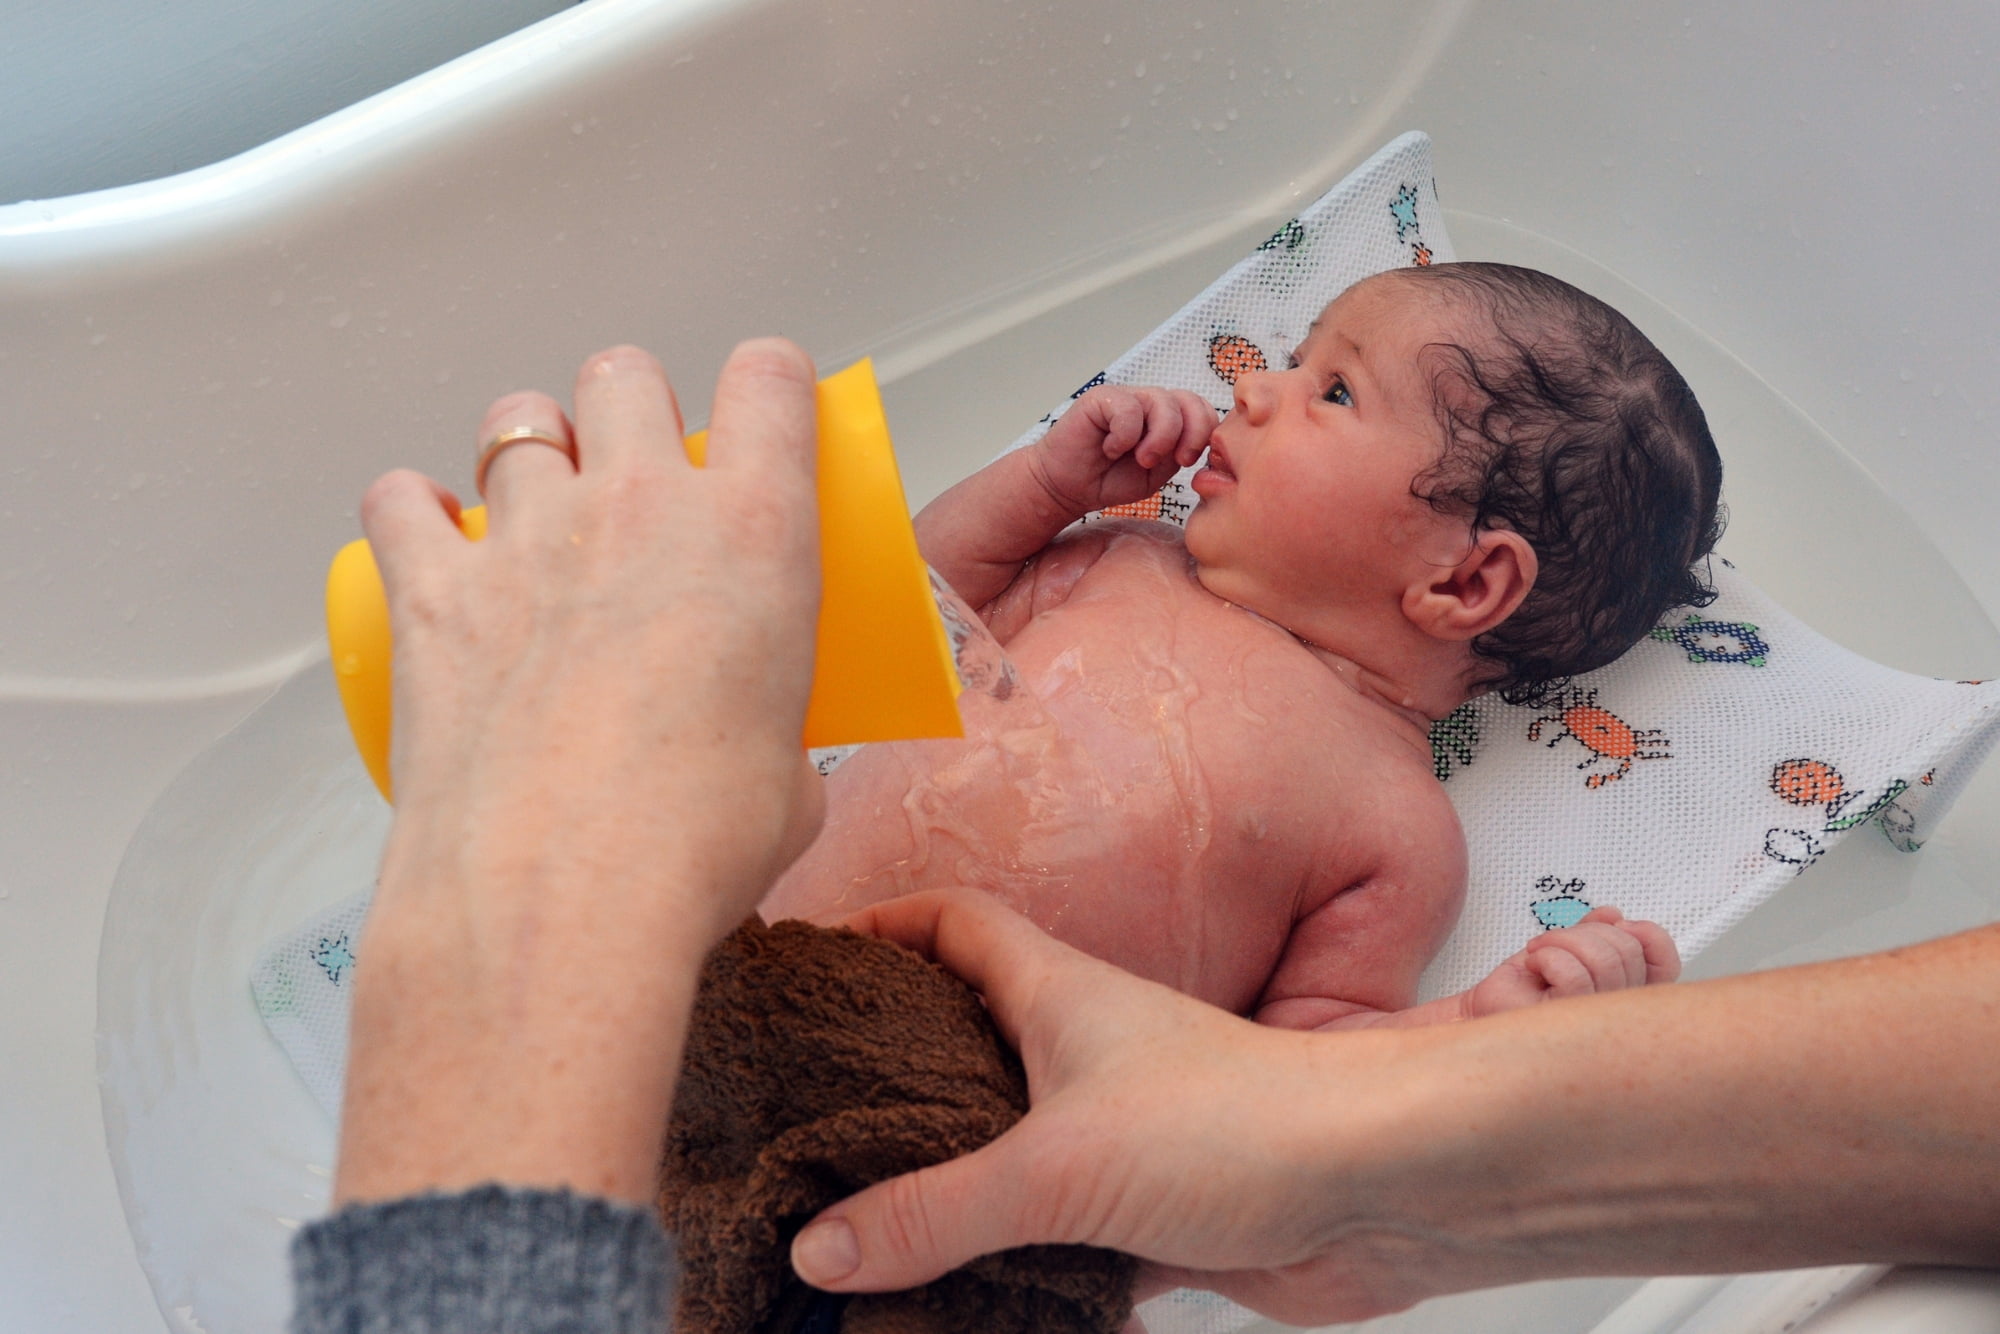 Температура для купания новорожденных в ванночке